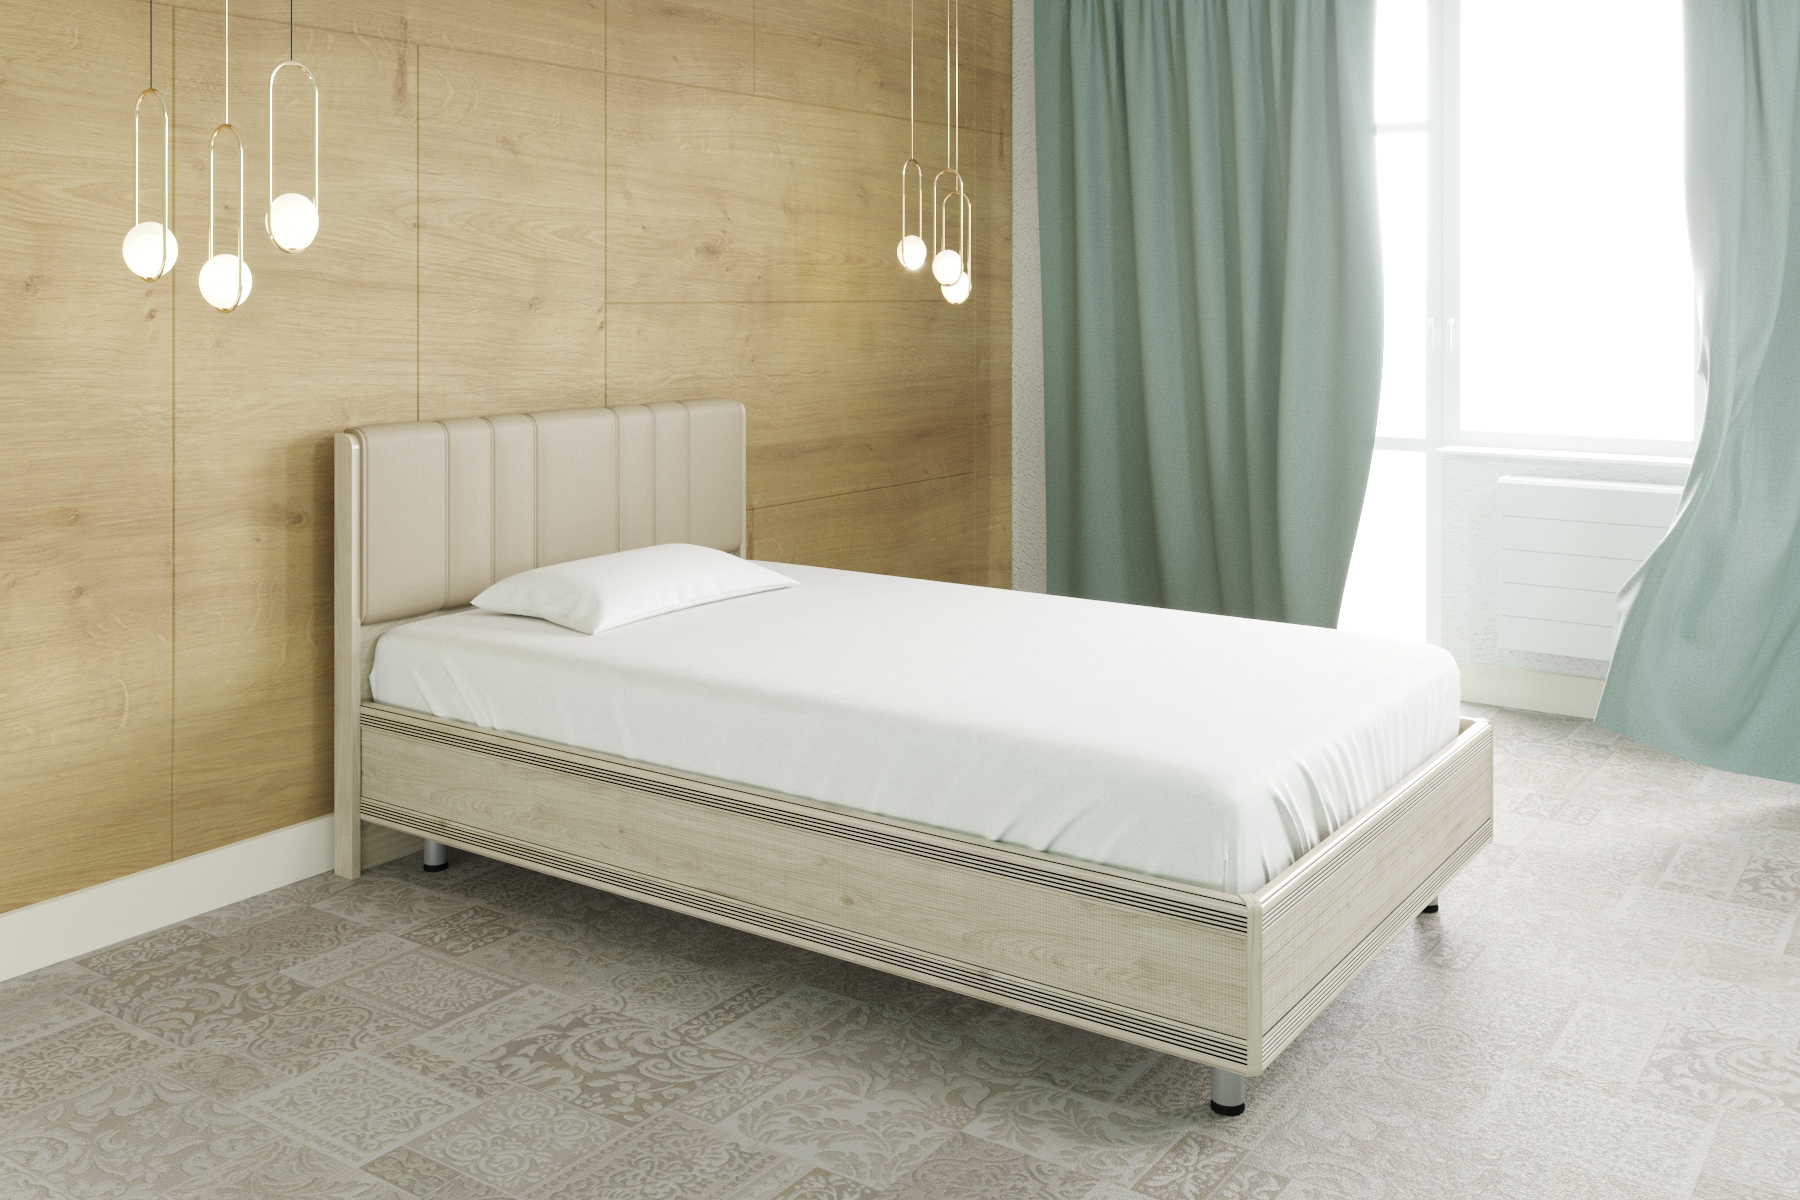 Двуспальная кровать (1,8x2,0) КР-2014 – изображение 3